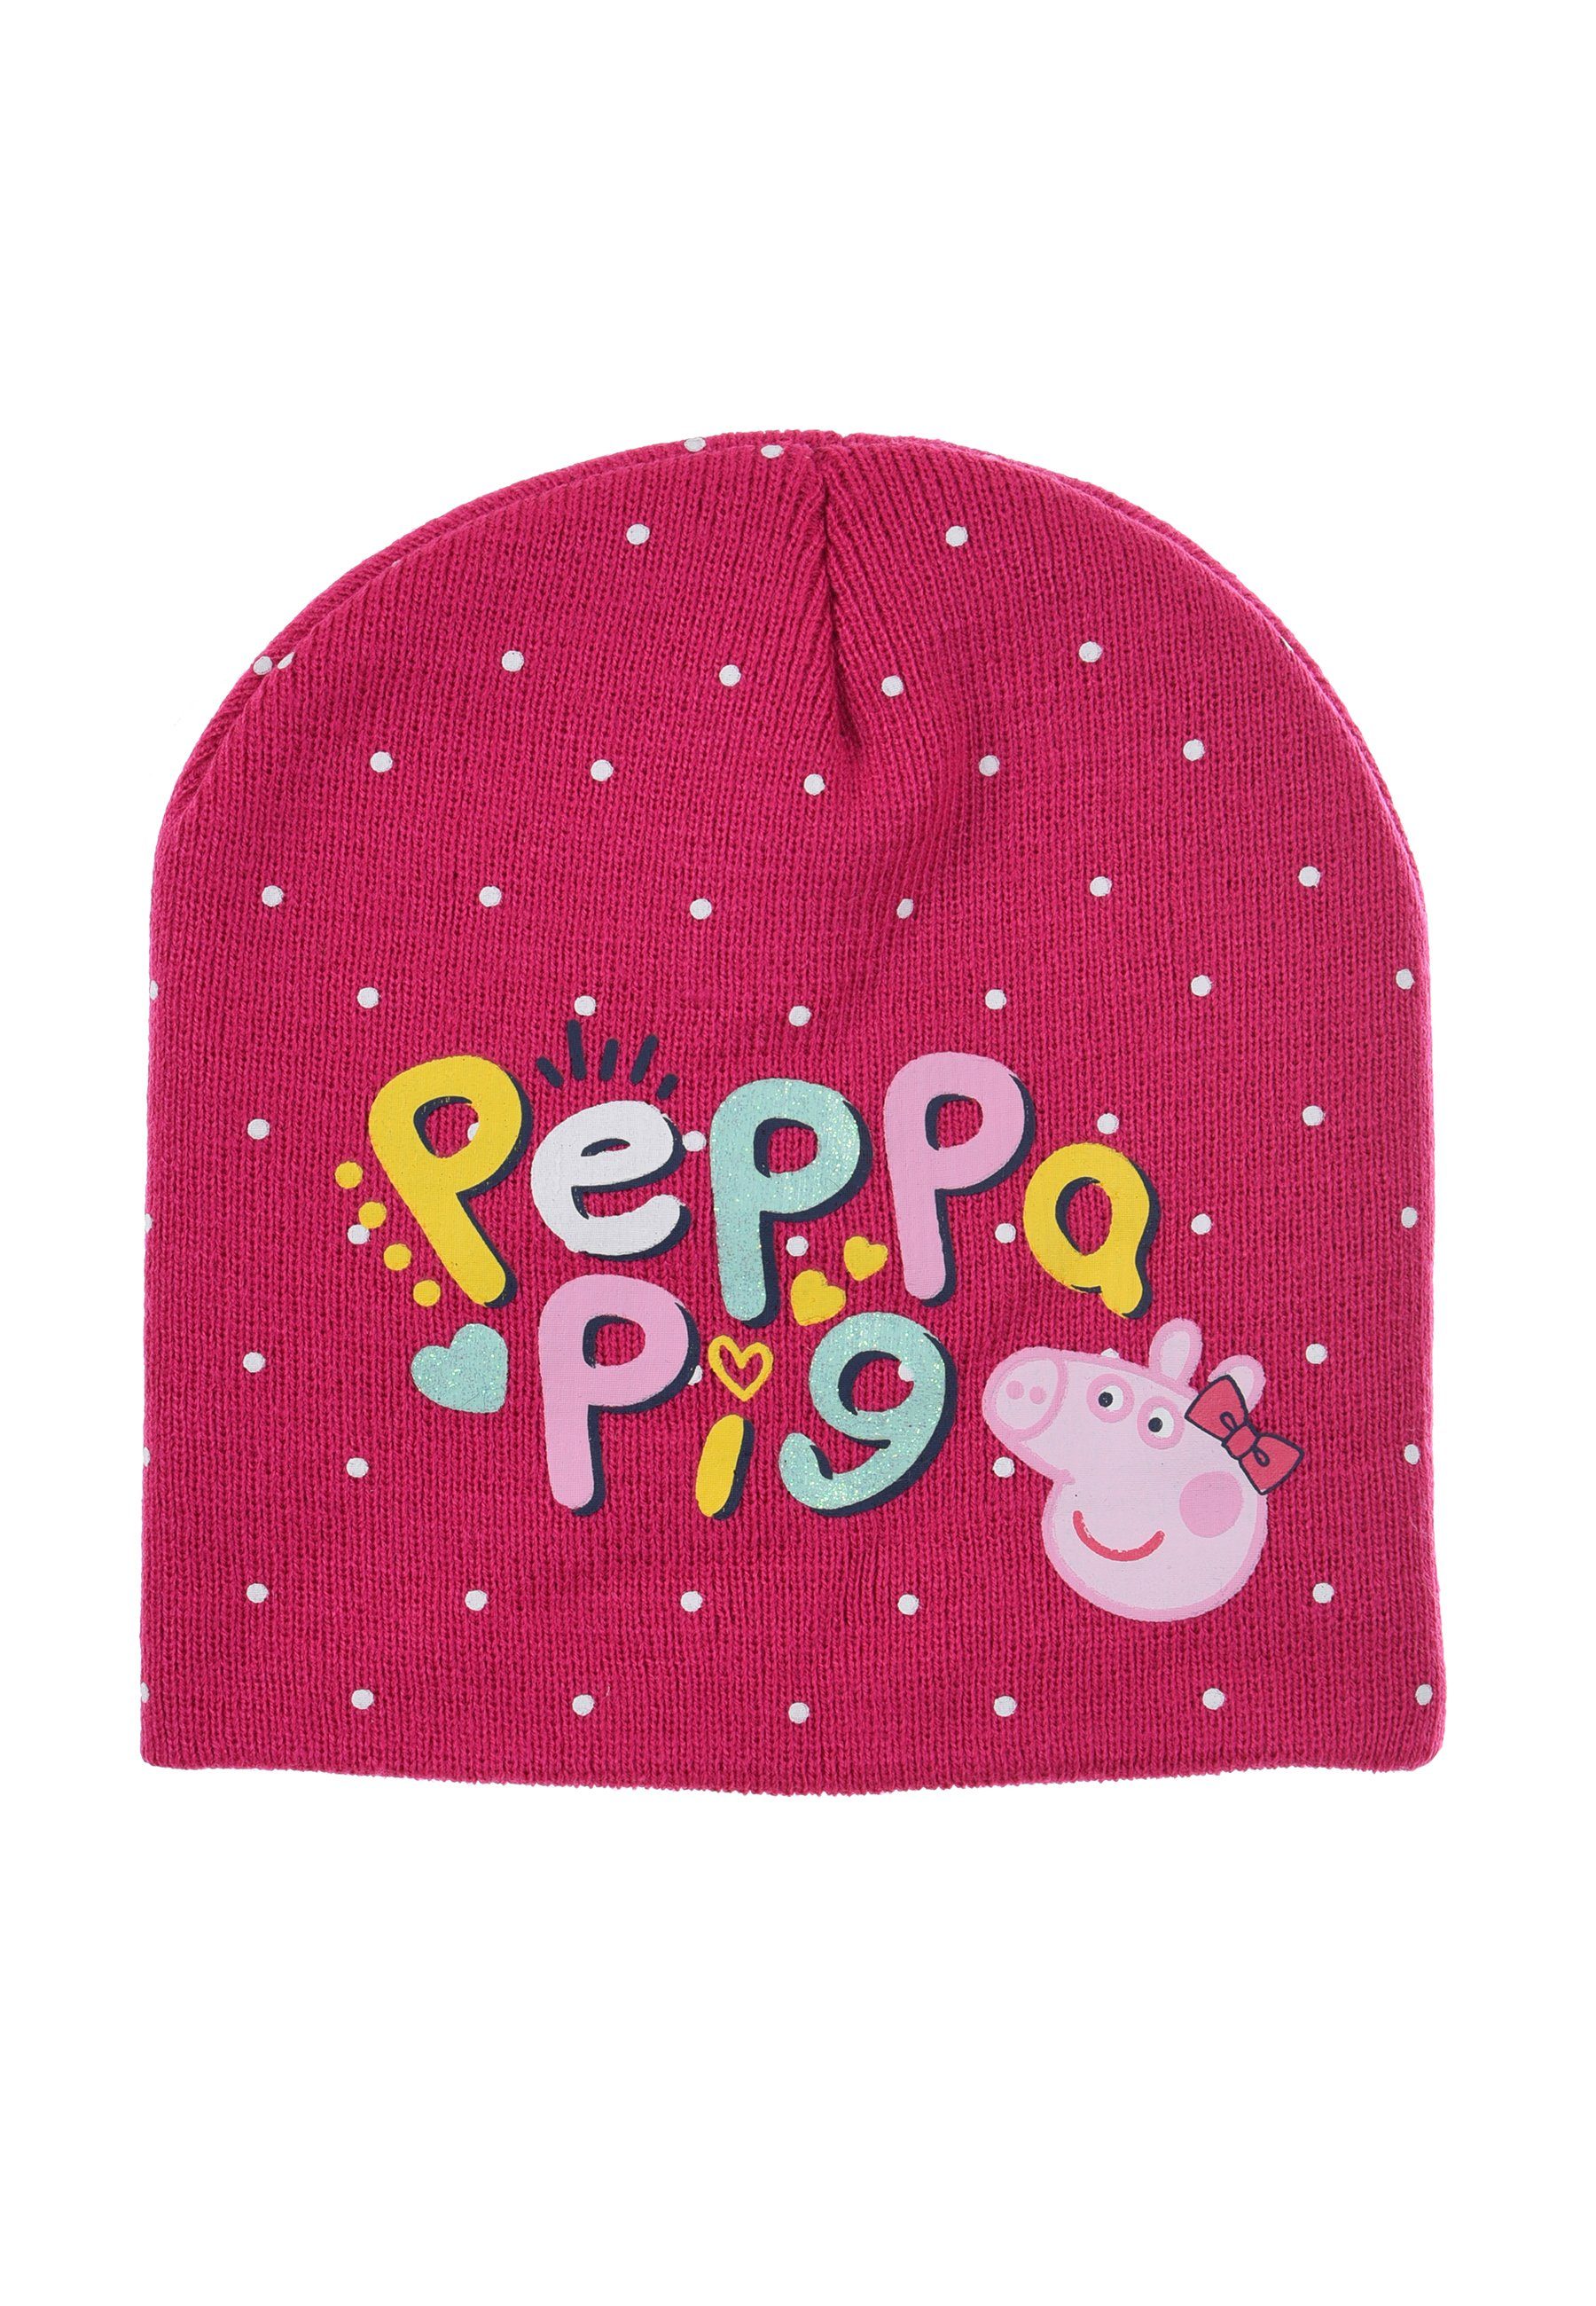 Peppa Pig Beanie Peppa Wutz Kinder Mädchen Winter-Mütze Pink